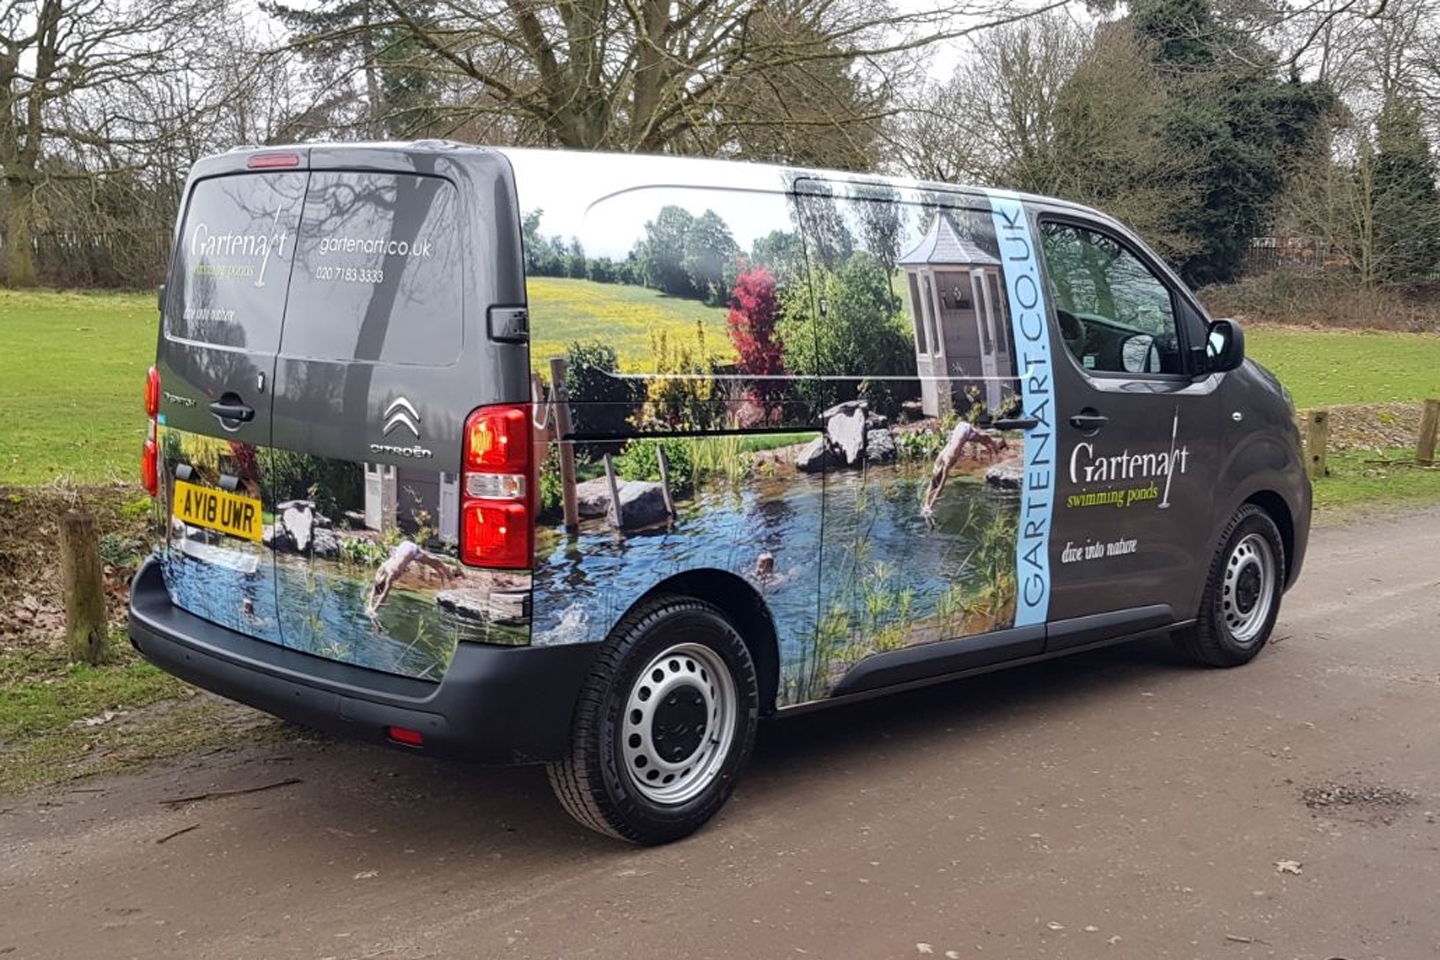 Gartenart | News | Our new maintetnance van!